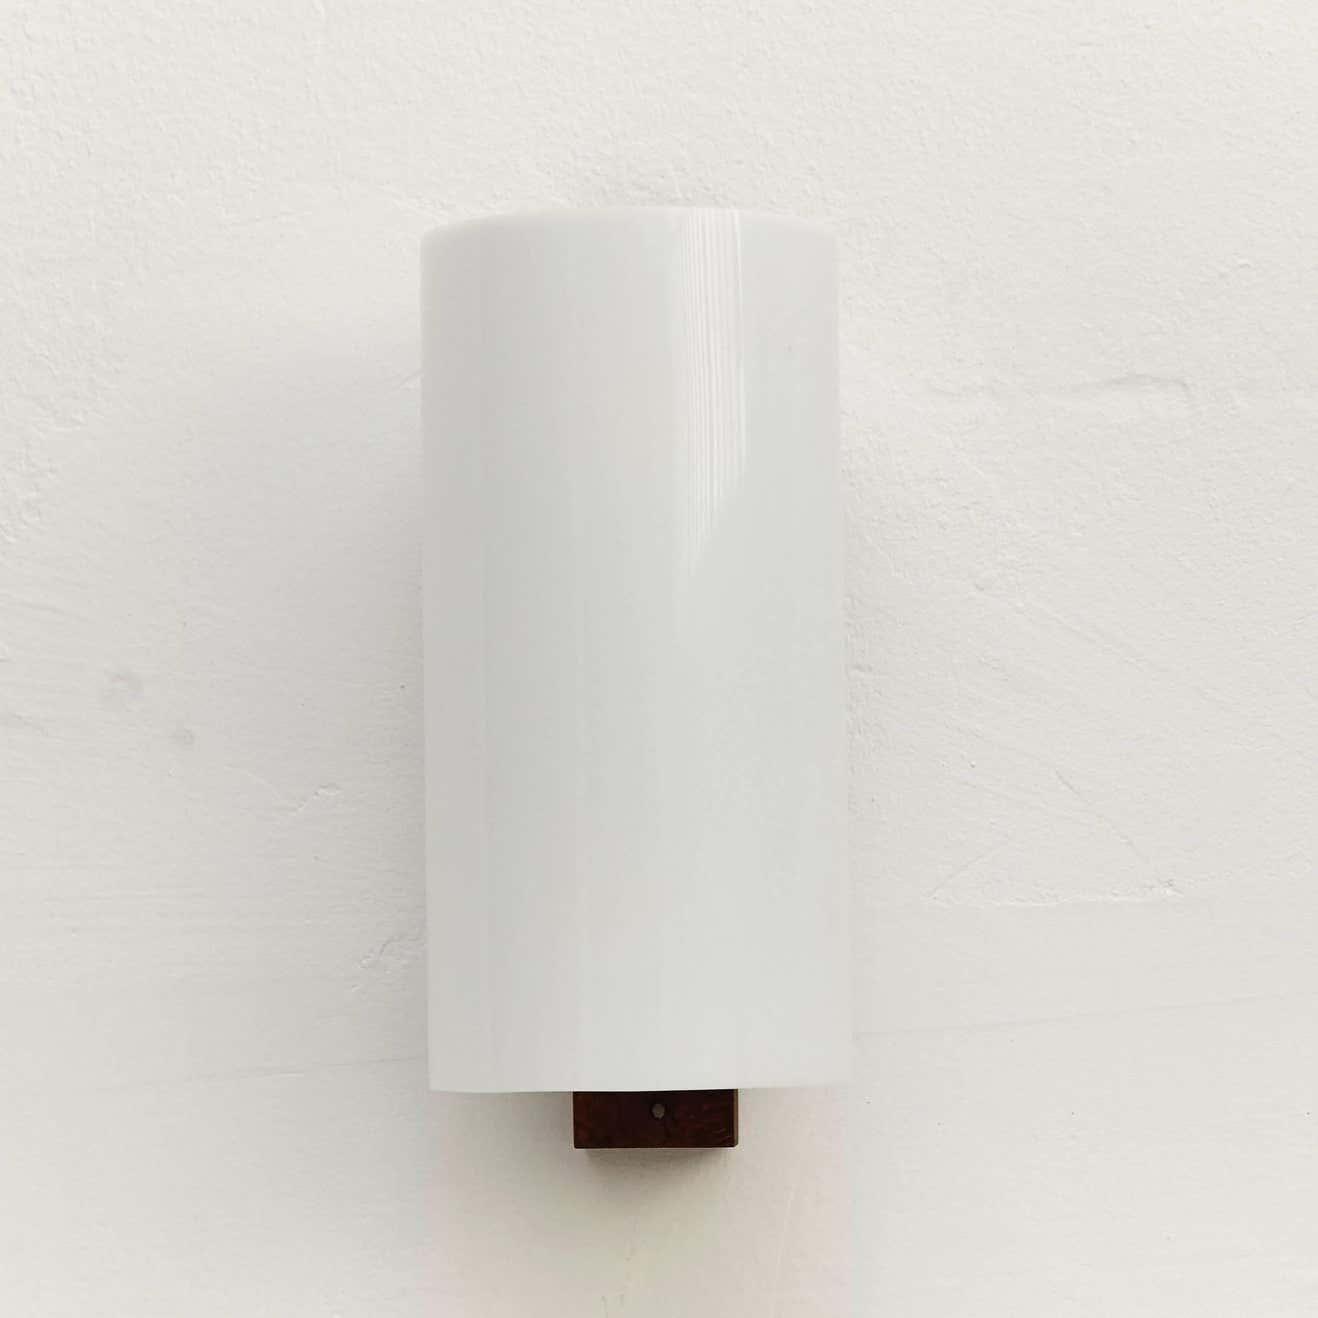 Aplique-Lampe, entworfen von Miguel Mila'.
Hergestellt von Tramo (Spanien), ca. 1960.
Struktur aus Holz und Lampenschirm aus Kunststoff.

In gutem Originalzustand mit geringen alters- und gebrauchsbedingten Abnutzungserscheinungen, die eine